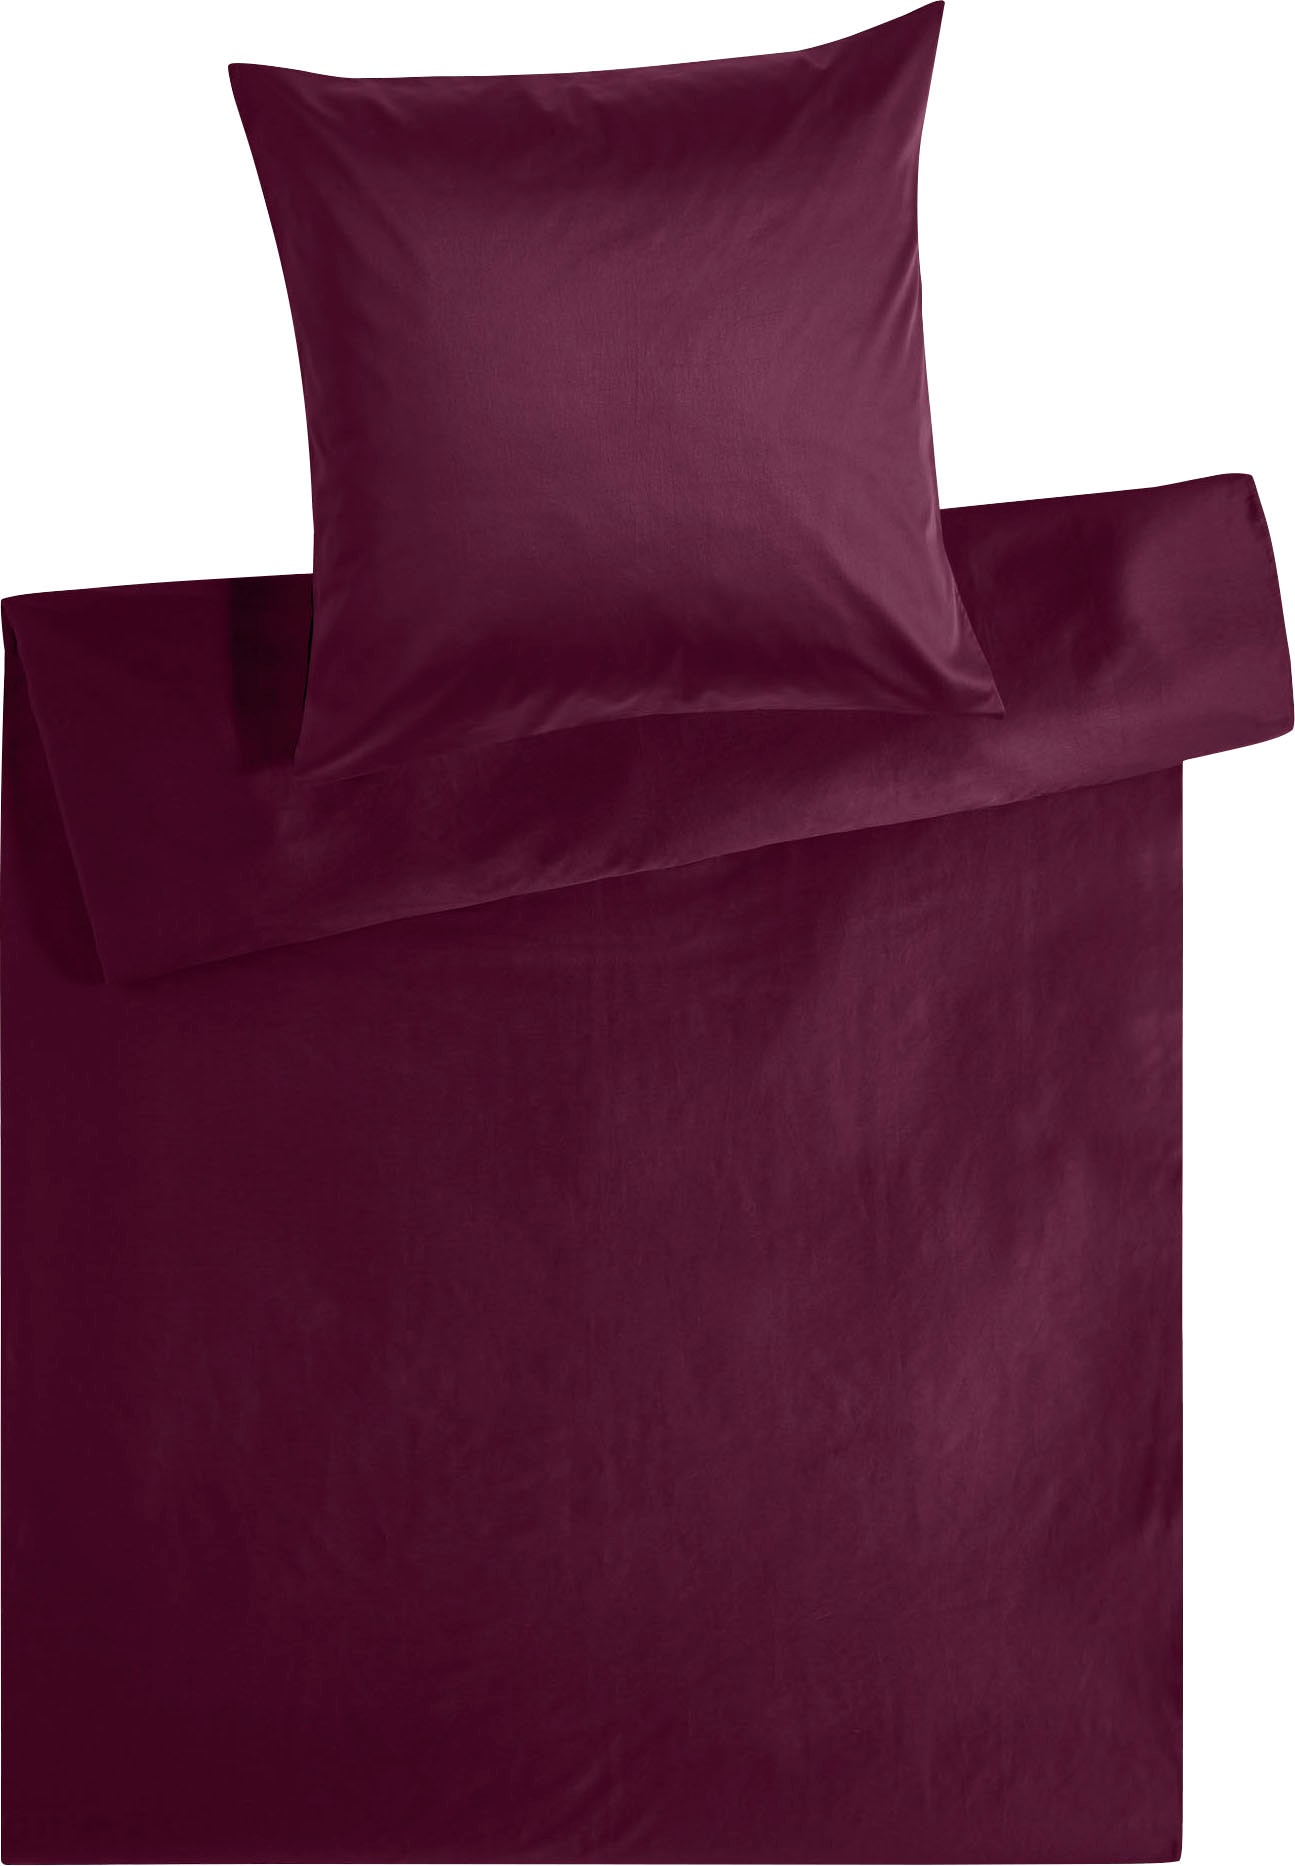 Kneer Bettwäsche »Edel-Satin Uni in 135x200, 155x220 oder 200x200 cm«, (3 tlg.), Bettwäsche aus Baumwolle in Satin-Qualität, unifarbene Bettwäsche von Kneer